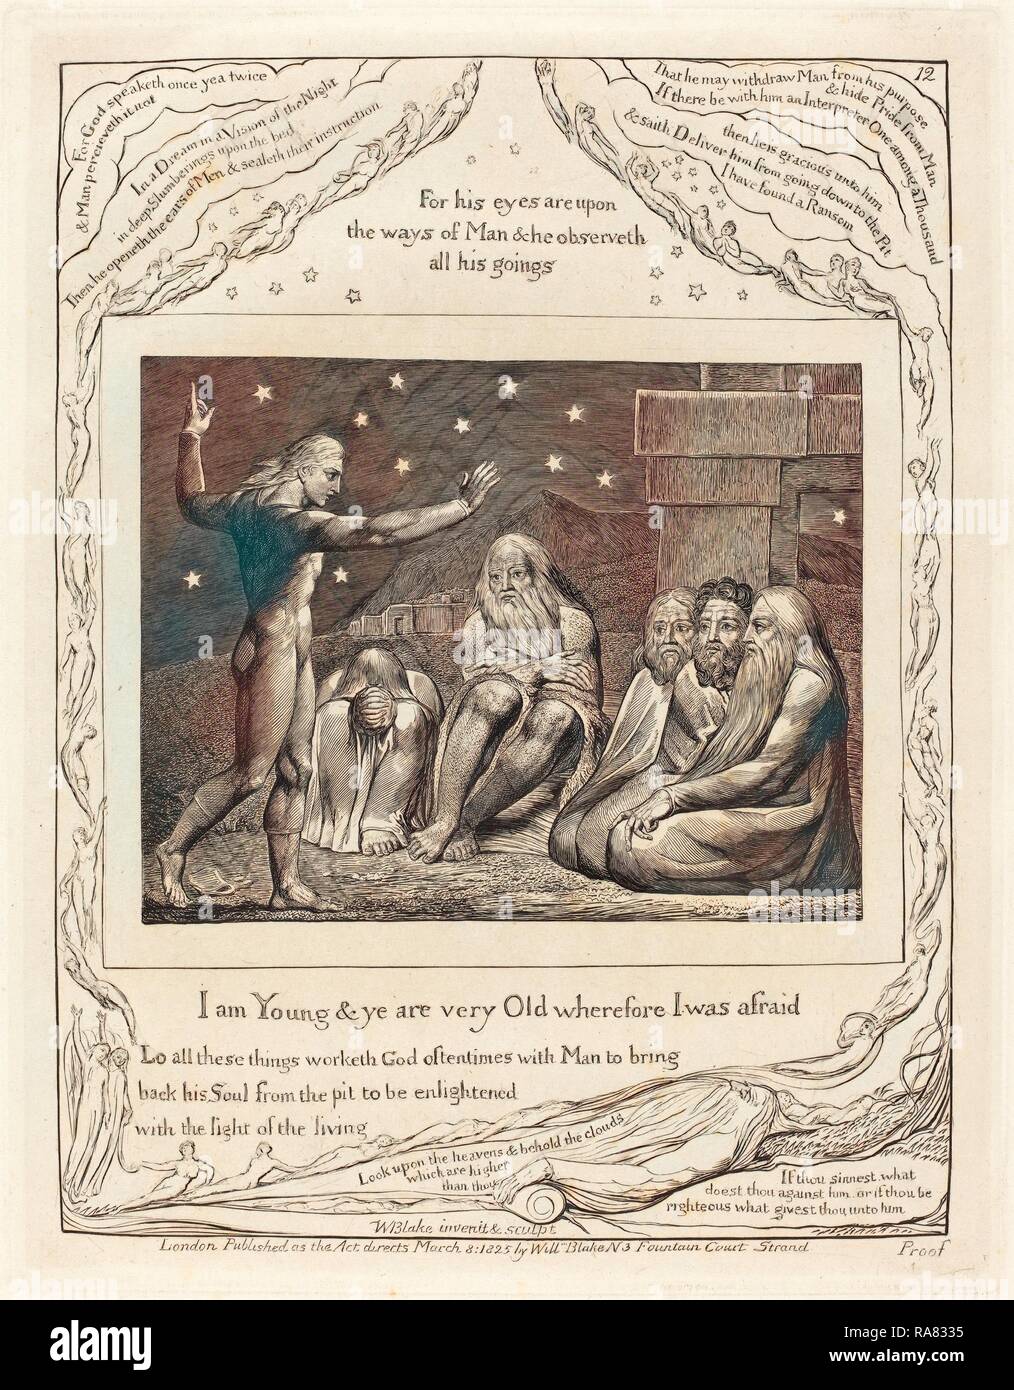 William Blake (britannique, 1757 - 1827), la colère de Elihu, 1825, gravure, papier indien. Repensé Banque D'Images